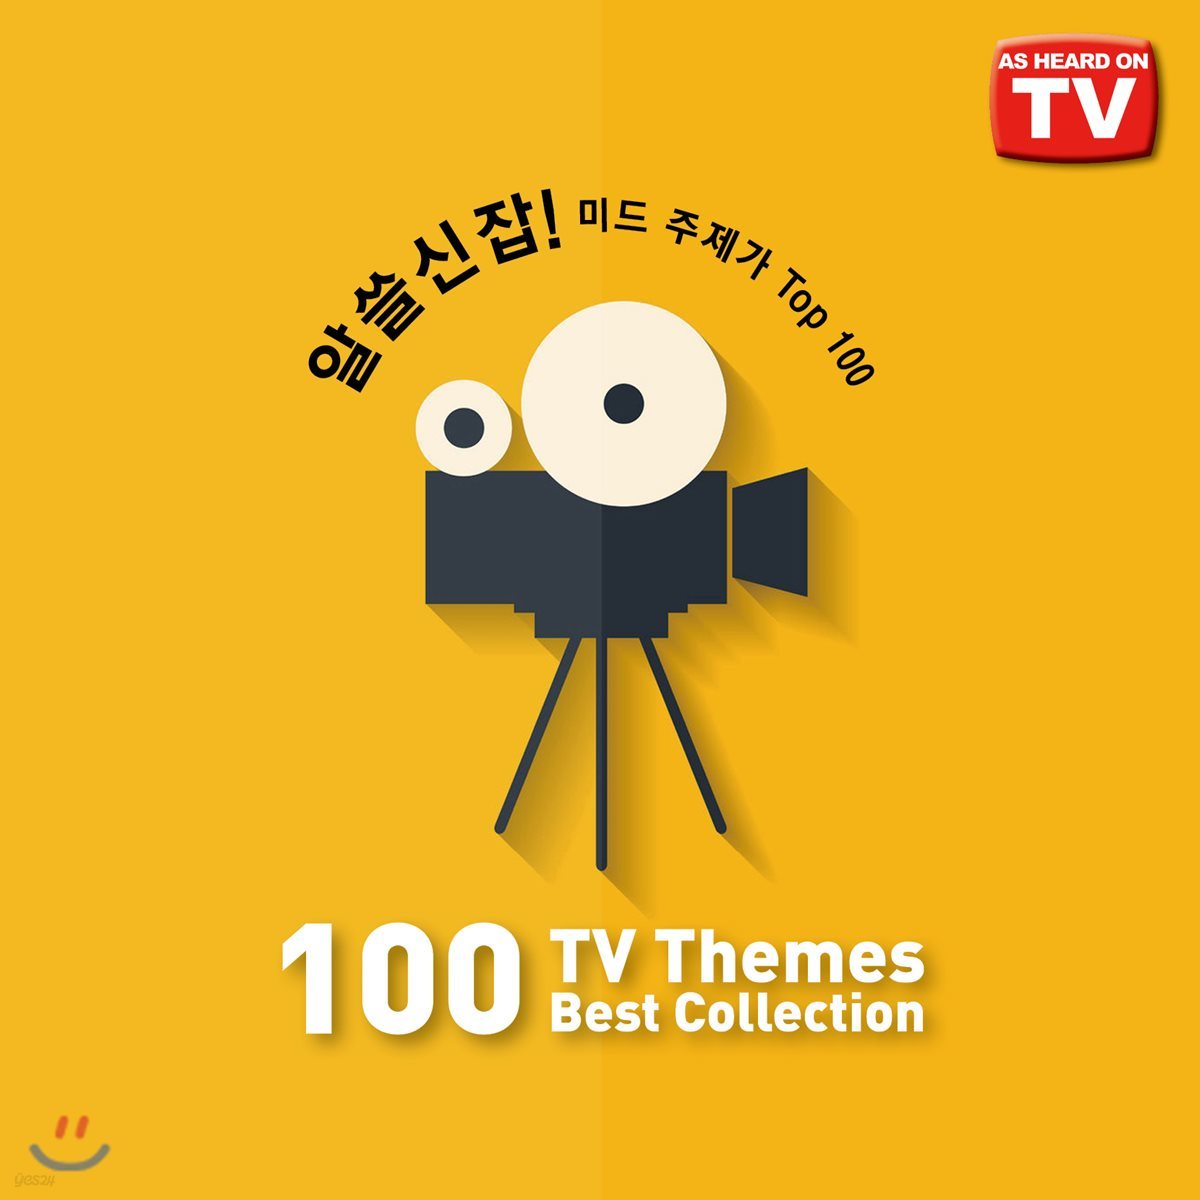 알쓸신잡! 미드 주제가 TOP 100 (100 TV Themes Best Collection) 